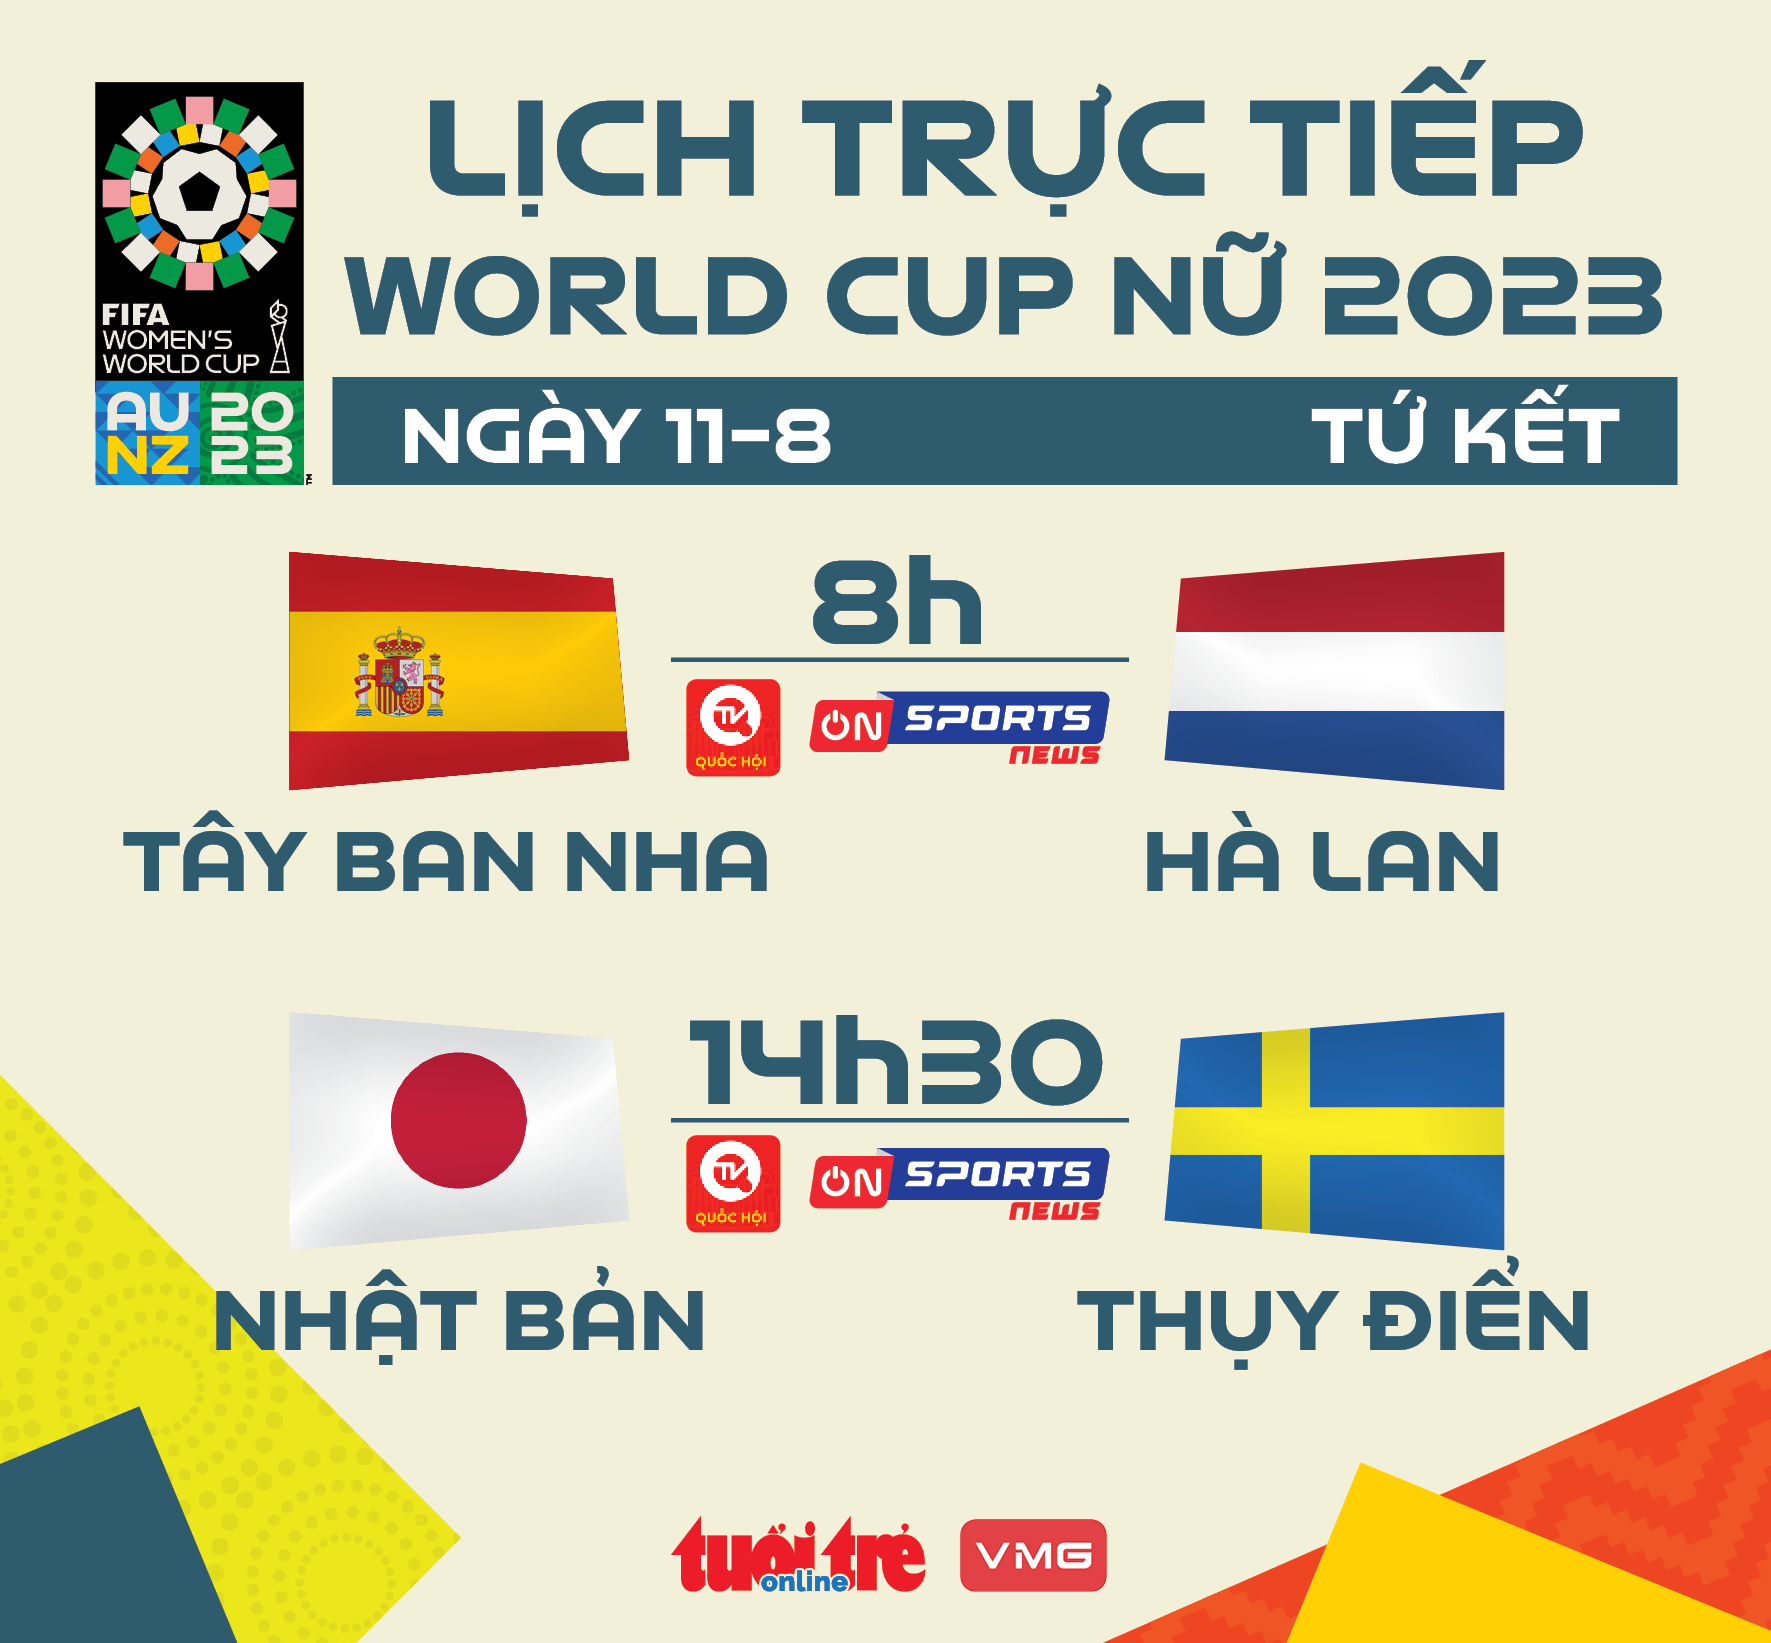 Lịch trực tiếp World Cup nữ 2023 ngày 11-8: Tây Ban Nha - Hà Lan, Nhật Bản - Thụy Điển - Ảnh 1.